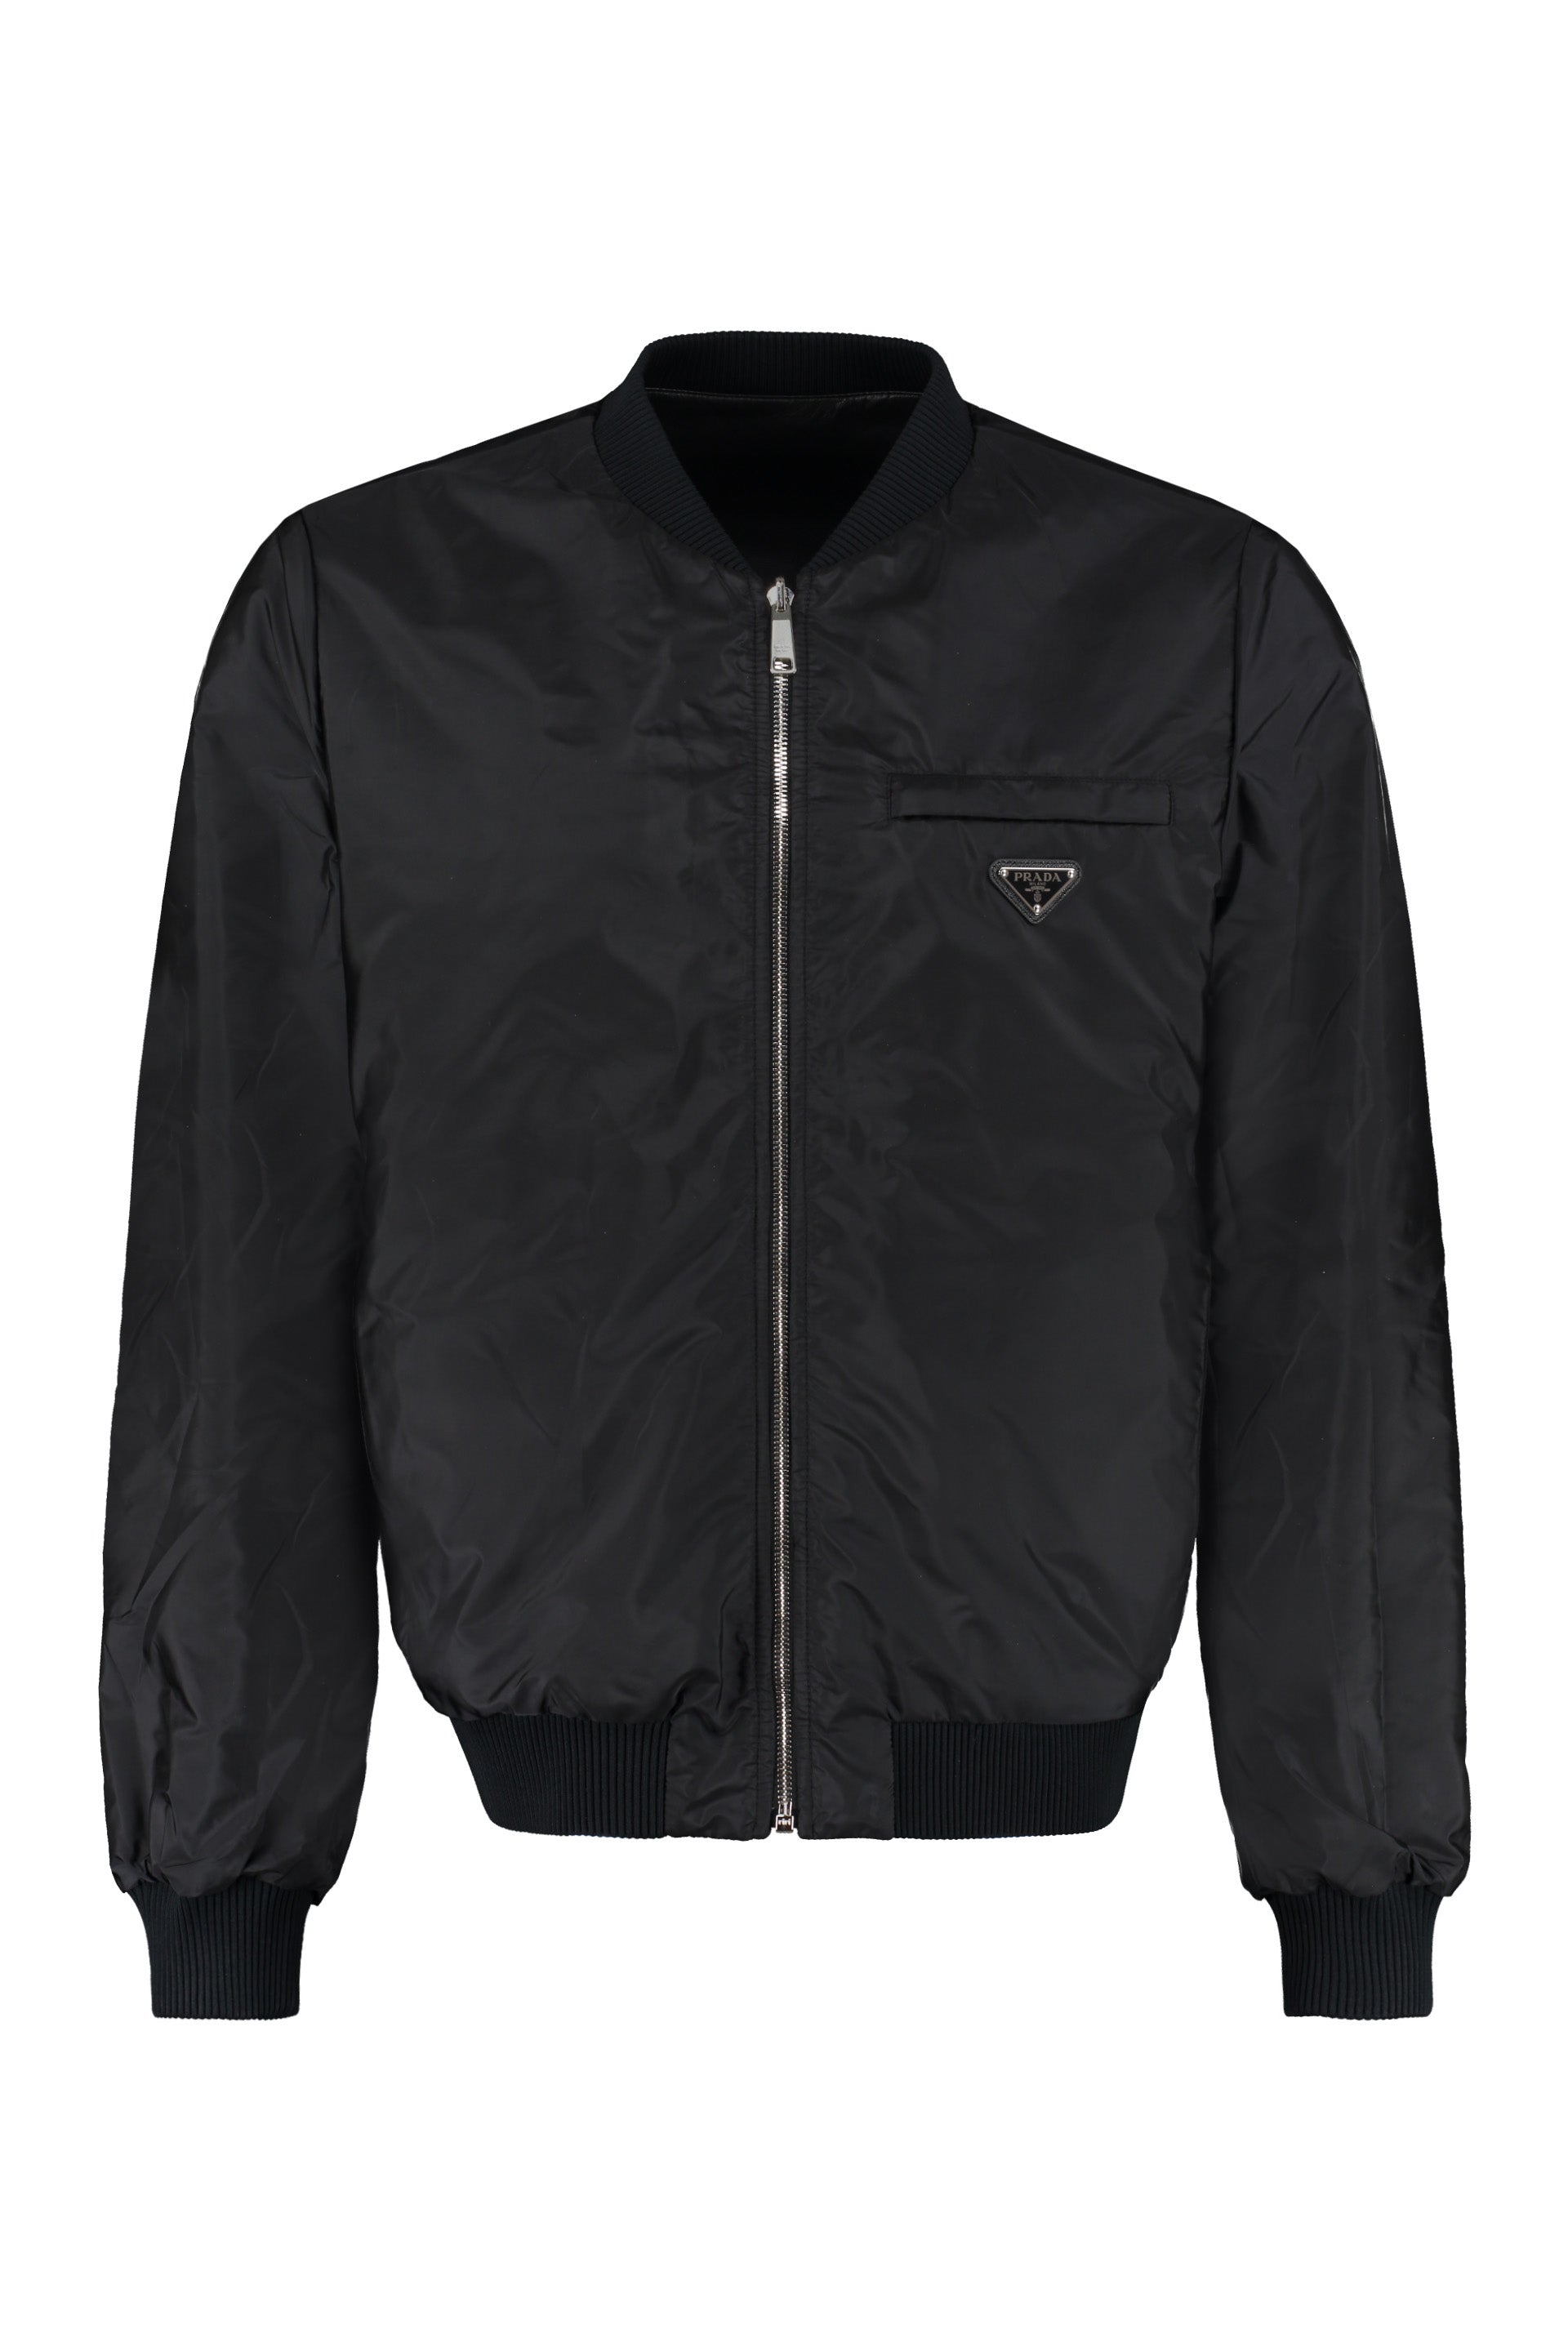 Prada velvet hooded zip-front bomber jacket - Black